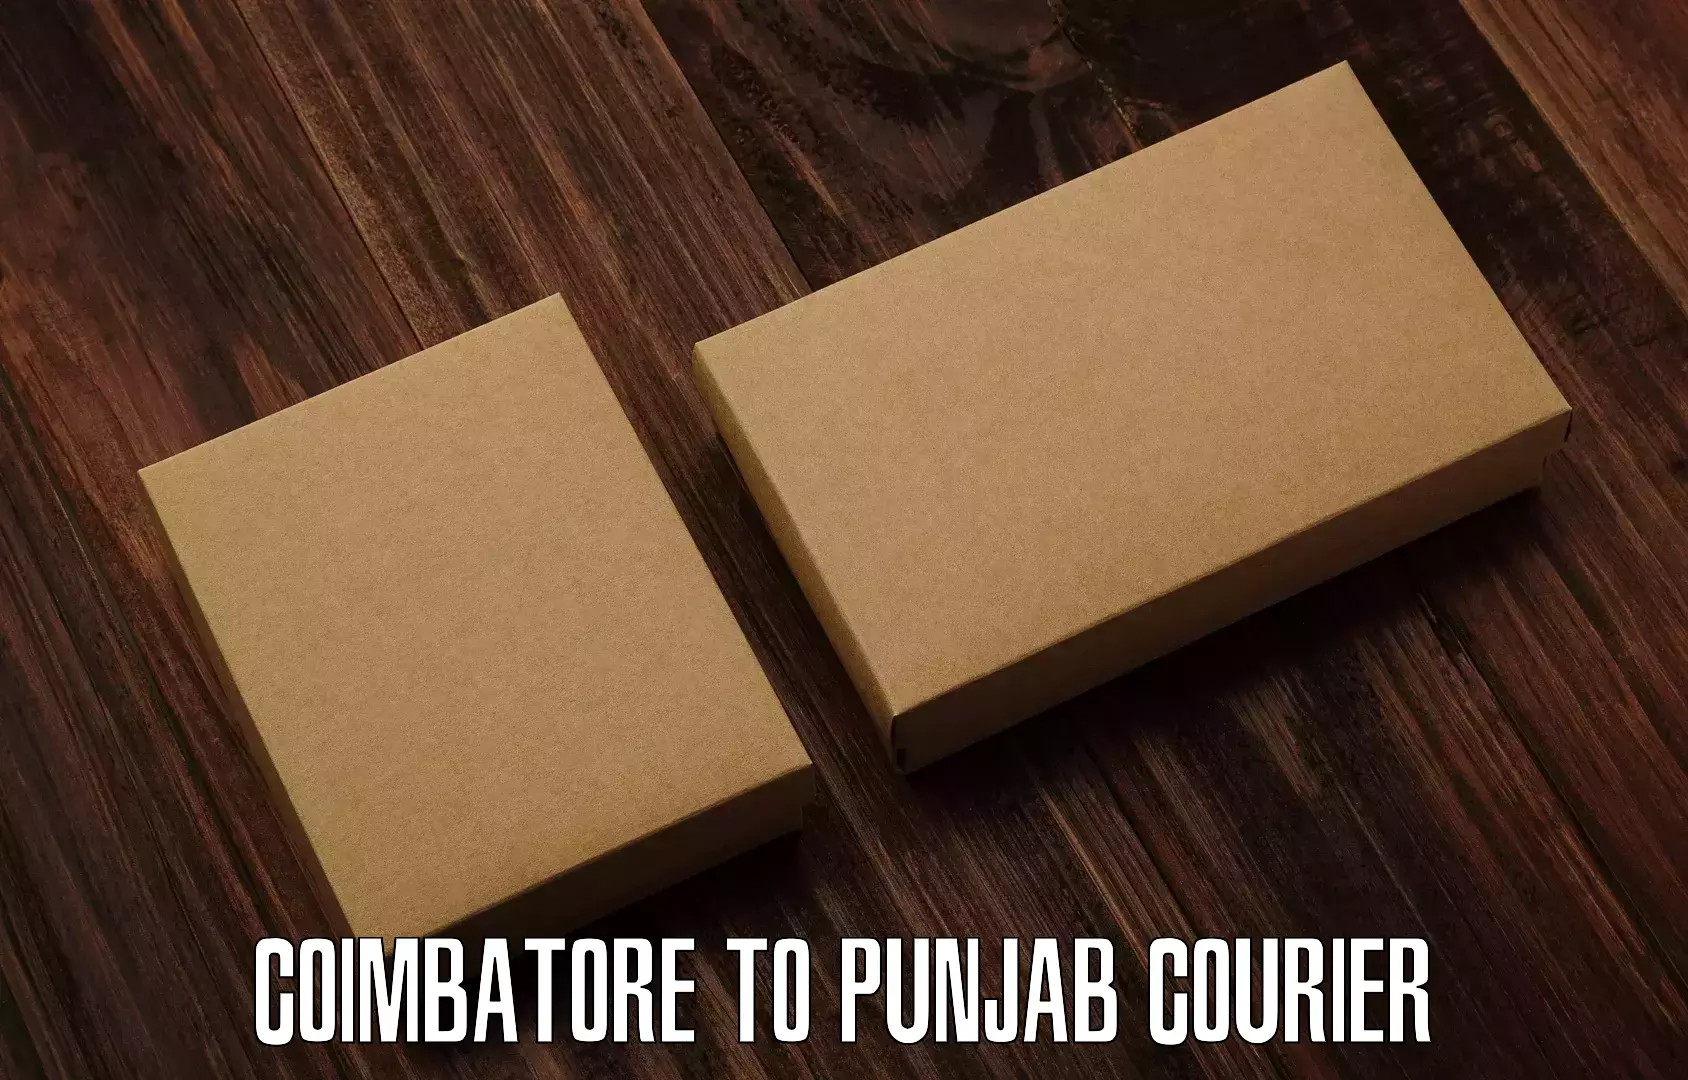 Express package handling Coimbatore to Punjab